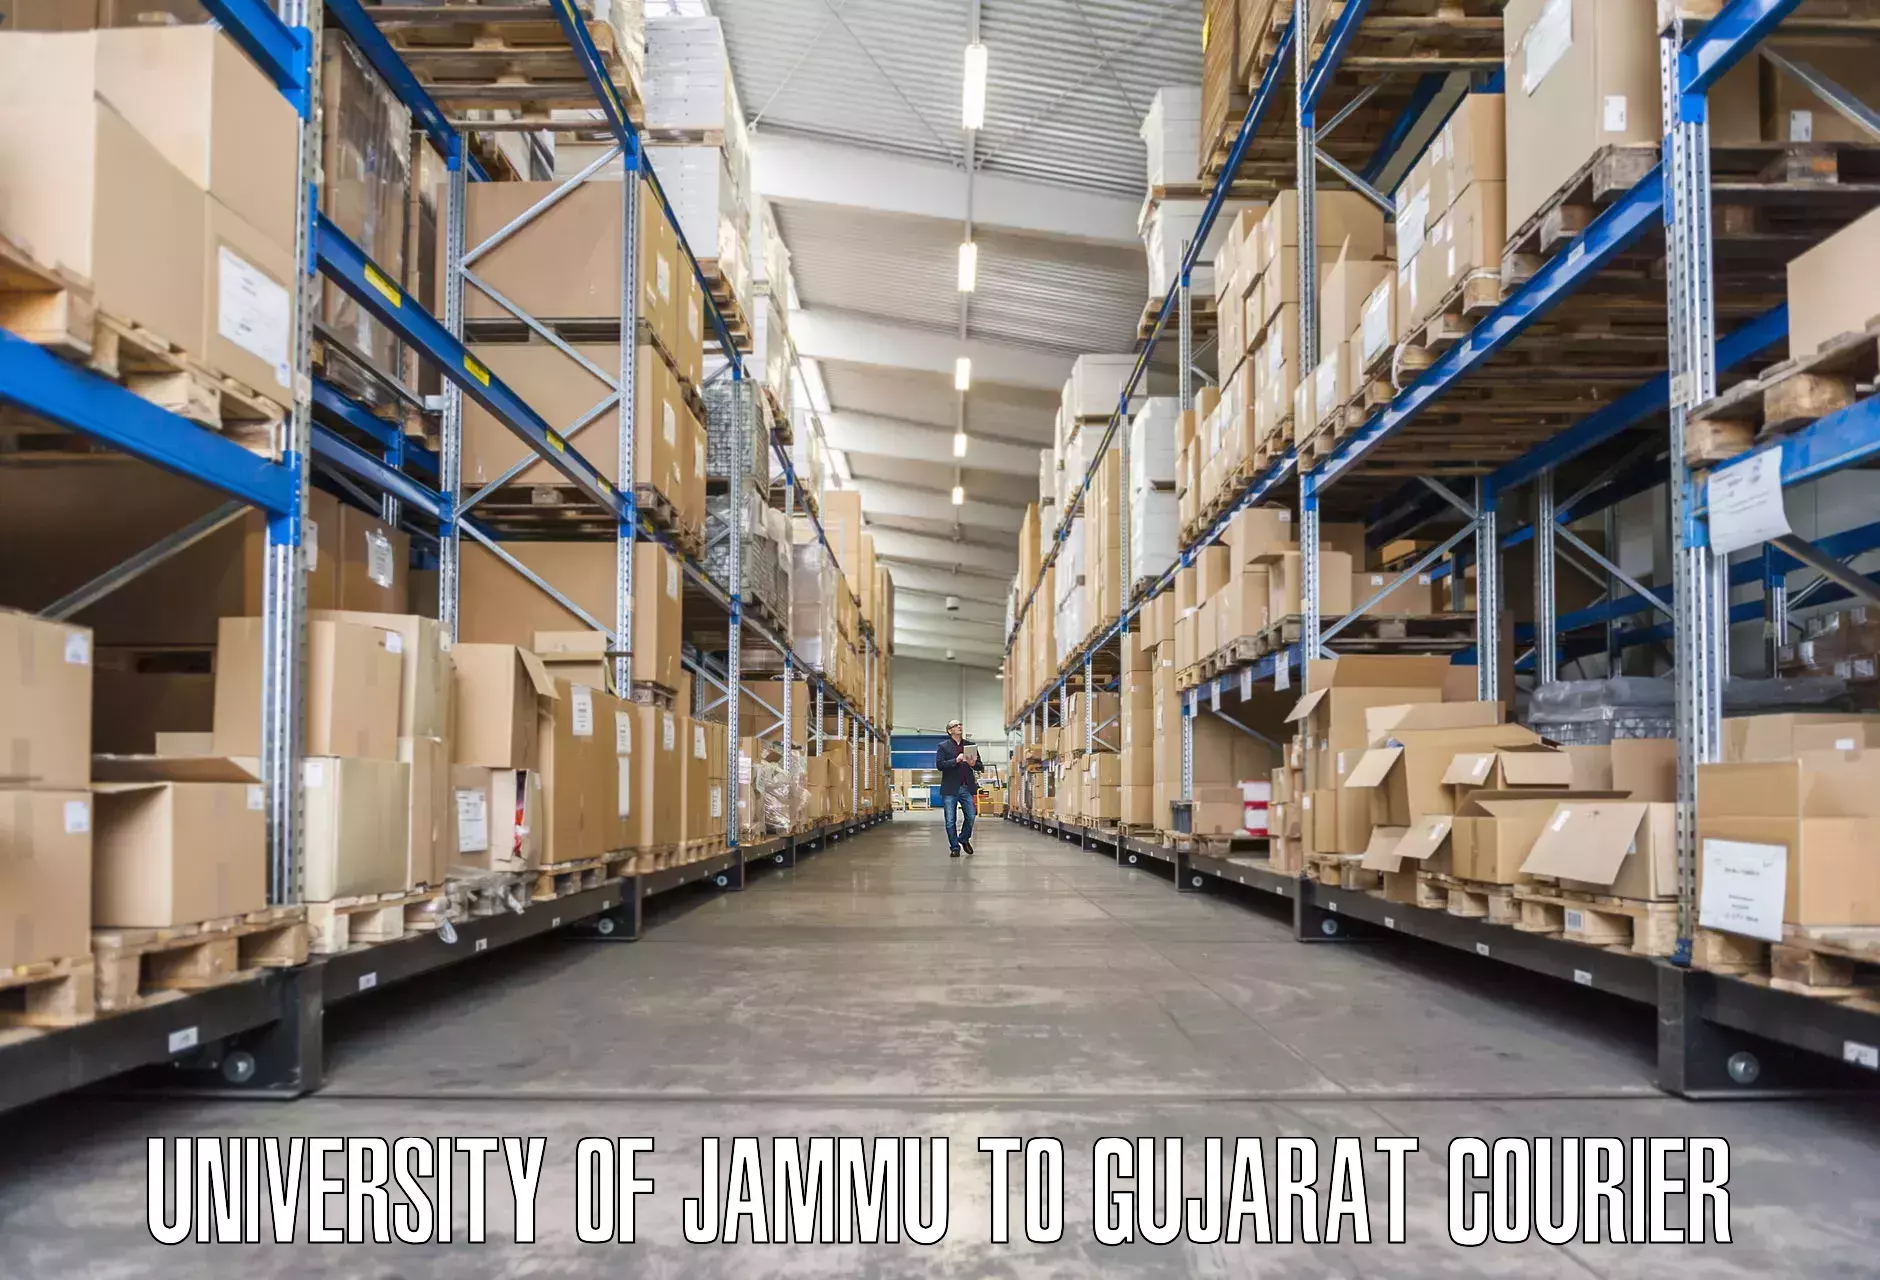 Reliable movers University of Jammu to IIIT Vadodara